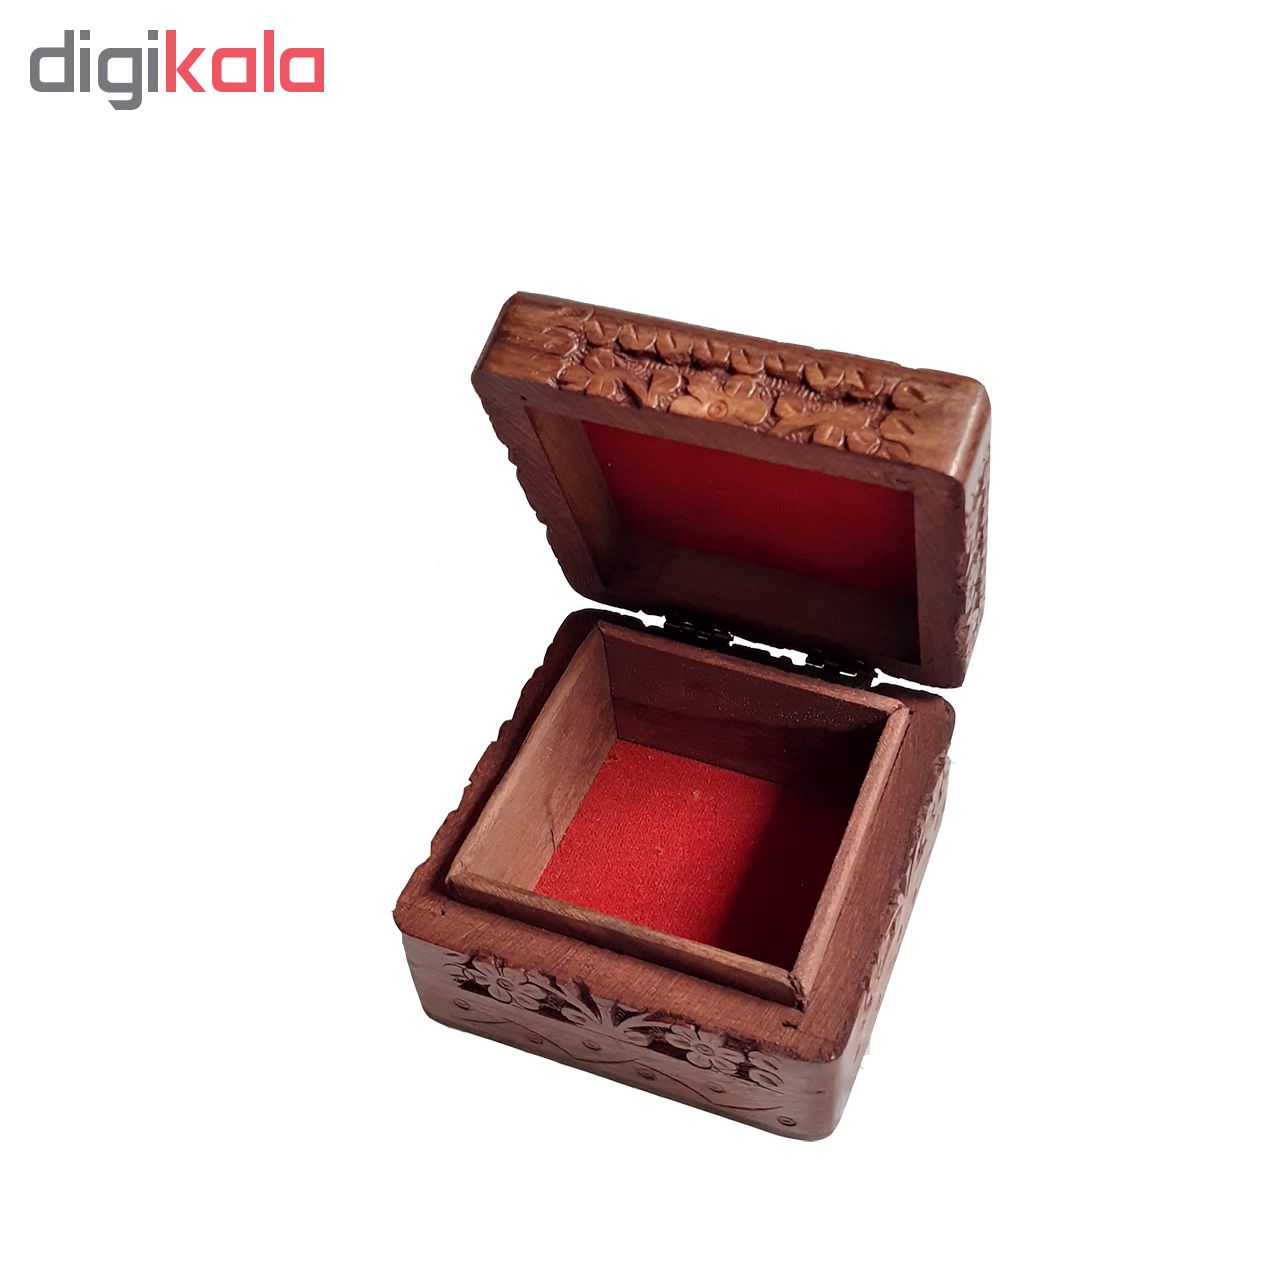 Handmade wooden carving gift box, HF-1010 MODEL